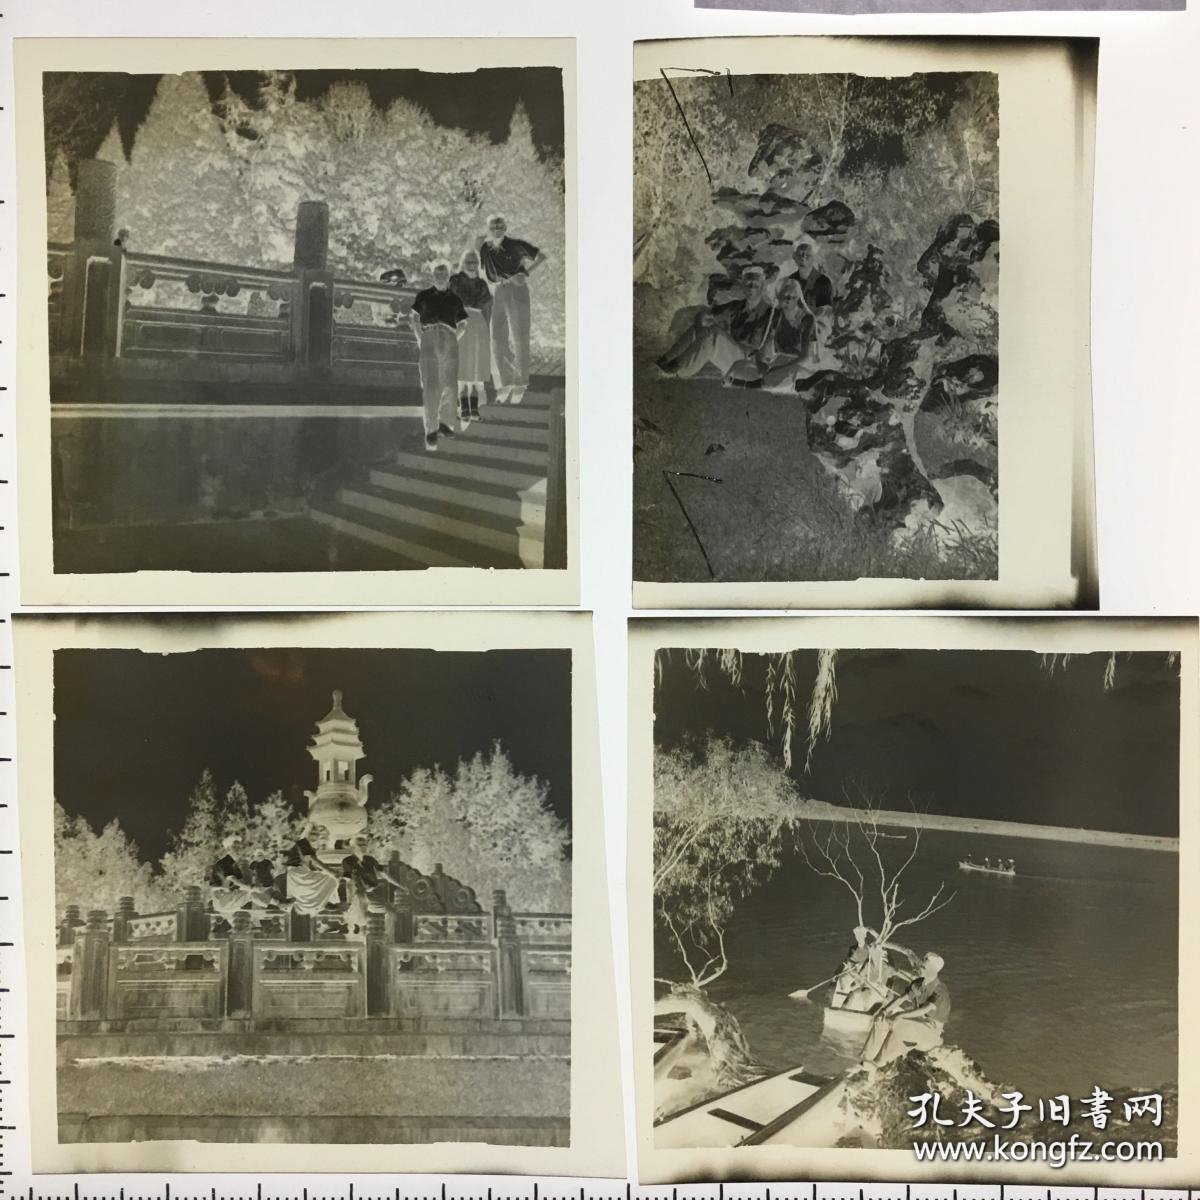 共和国初期军乐团相关·合影于南京玄武湖·旧底片4枚·详见书影·CDZPDP·30·10